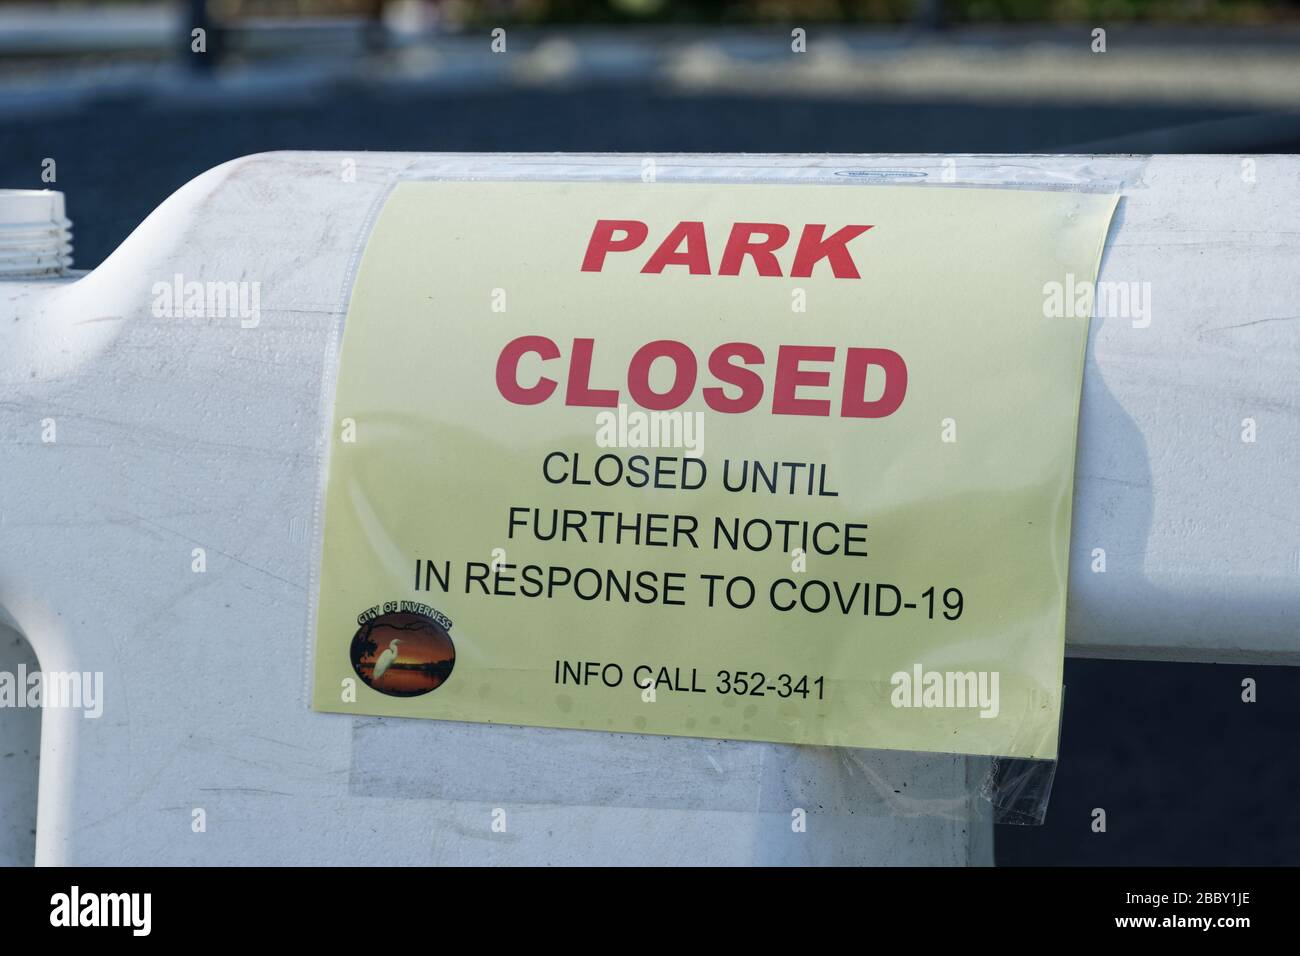 1° APRILE 2020, INVERNESS, FL: Barricate con segnaletica "Park closed" a causa dell'accesso al bar COVID-19 ai parchi pubblici di Inverness "fino a nuovo avviso". Foto Stock